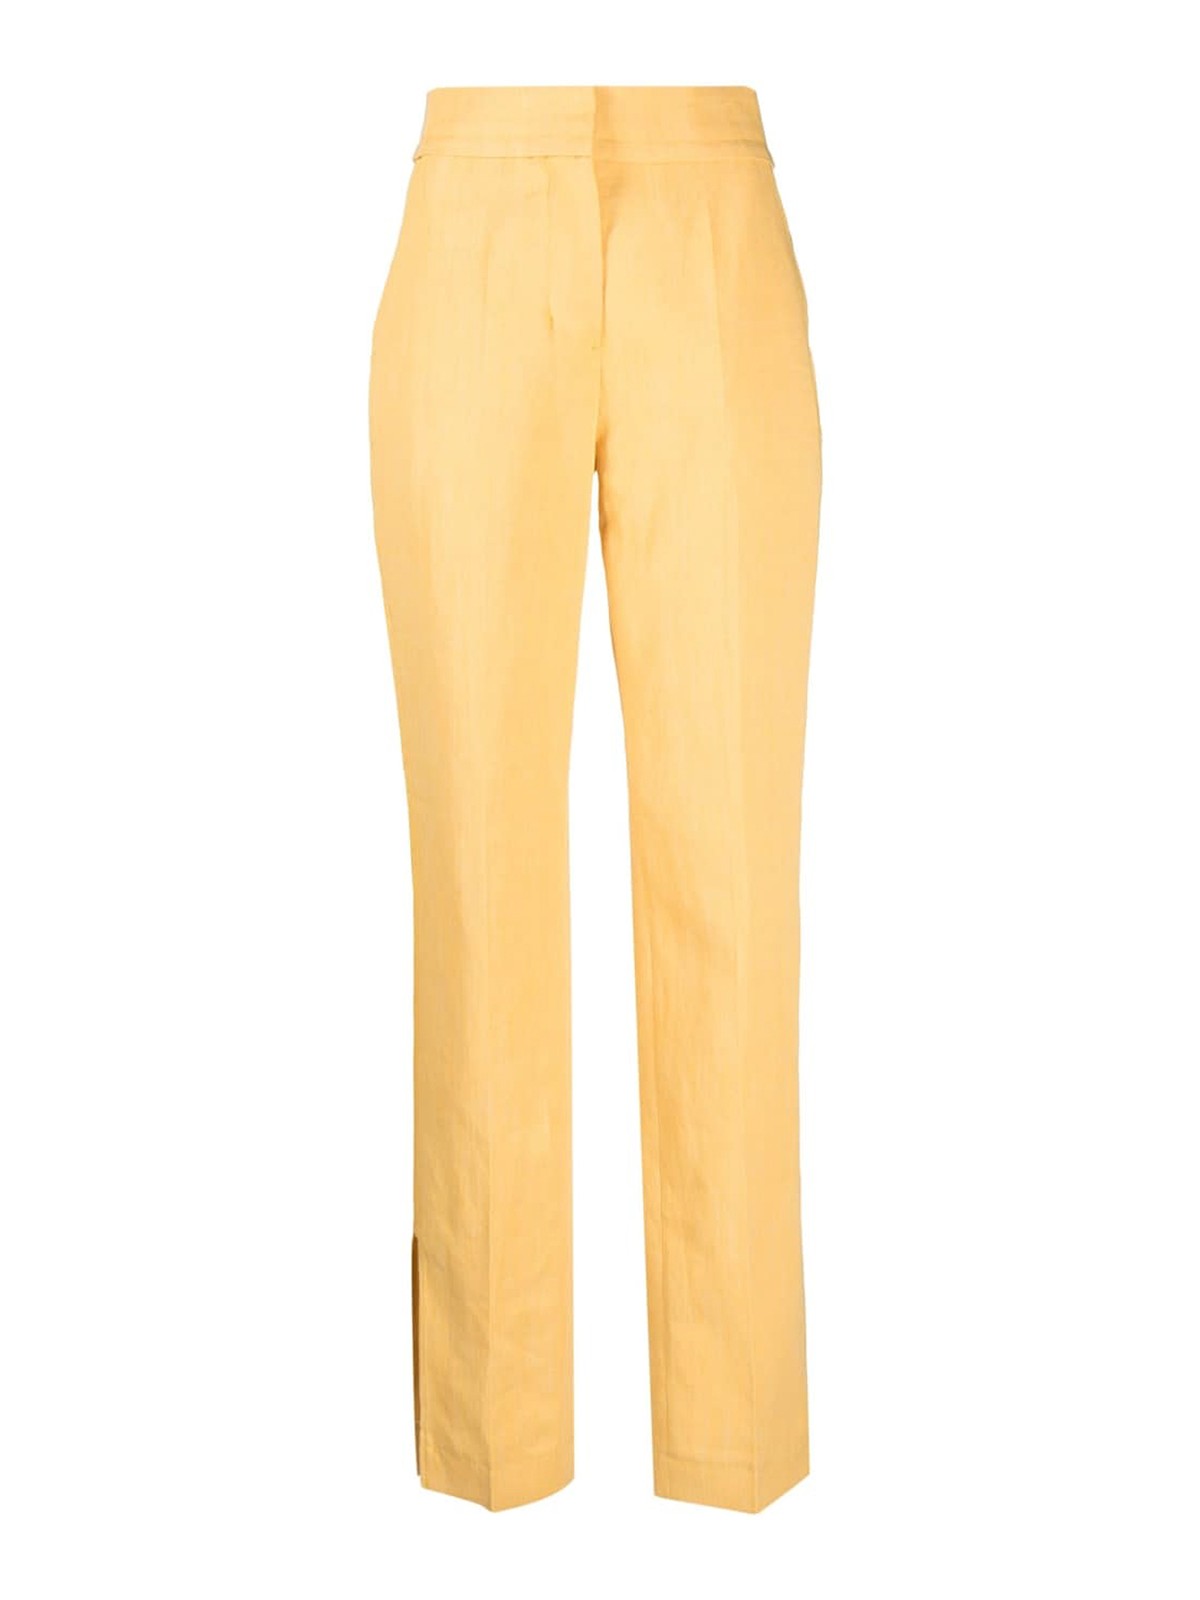 Styling Yellow Trousers - LaToya Ebony